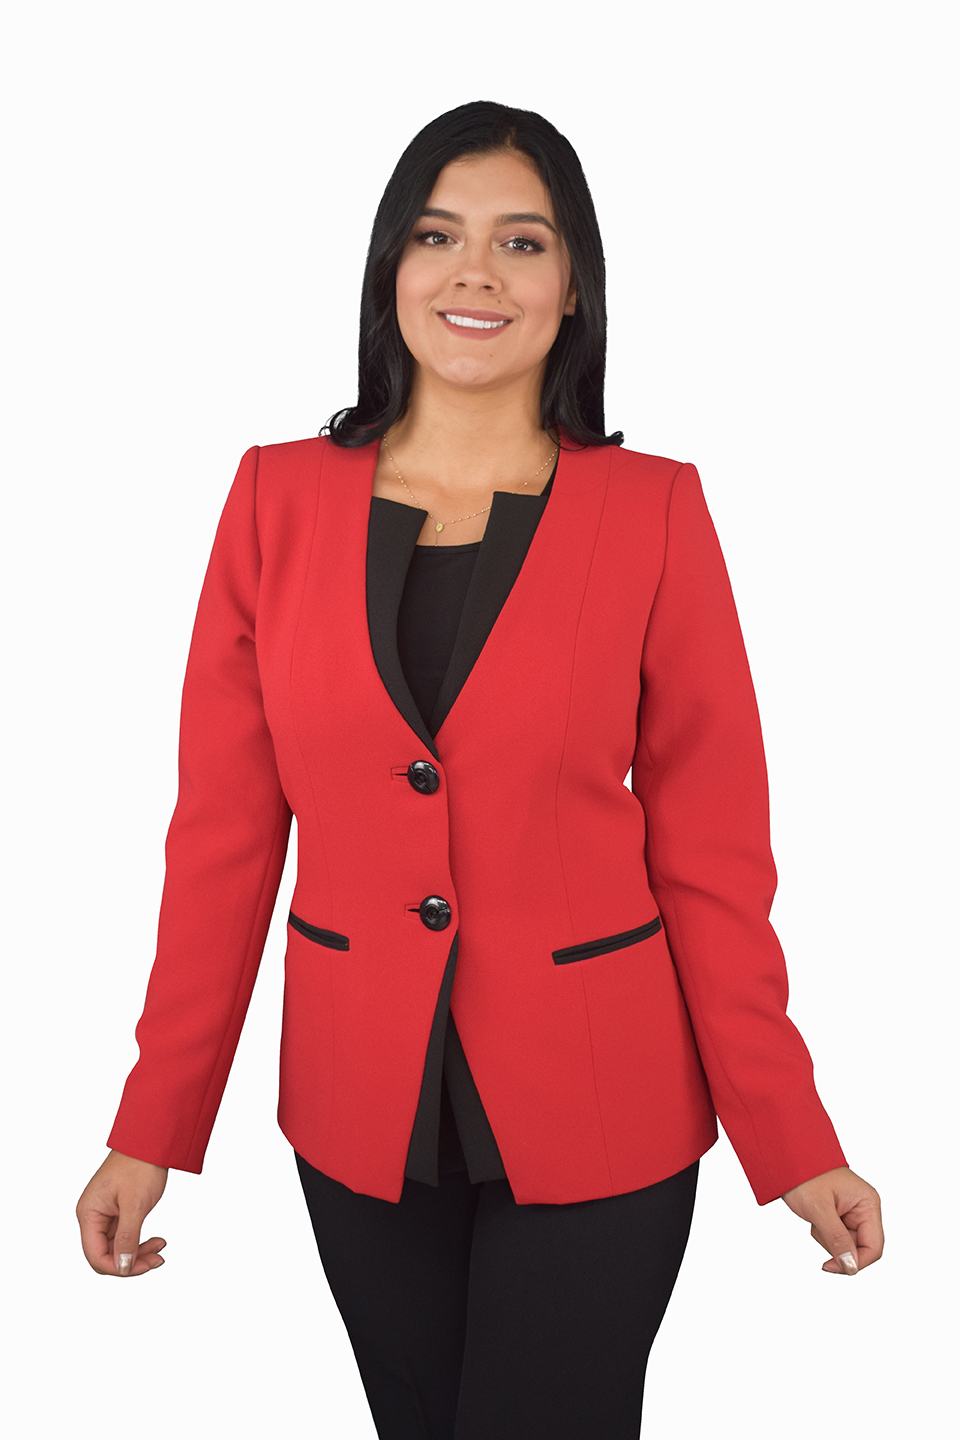 https://www.celmyltda.com/uniformes-empresariales/wp-content/uploads/2019/07/uniformes-empresariales-ejecutivos-mujer-0408.jpg